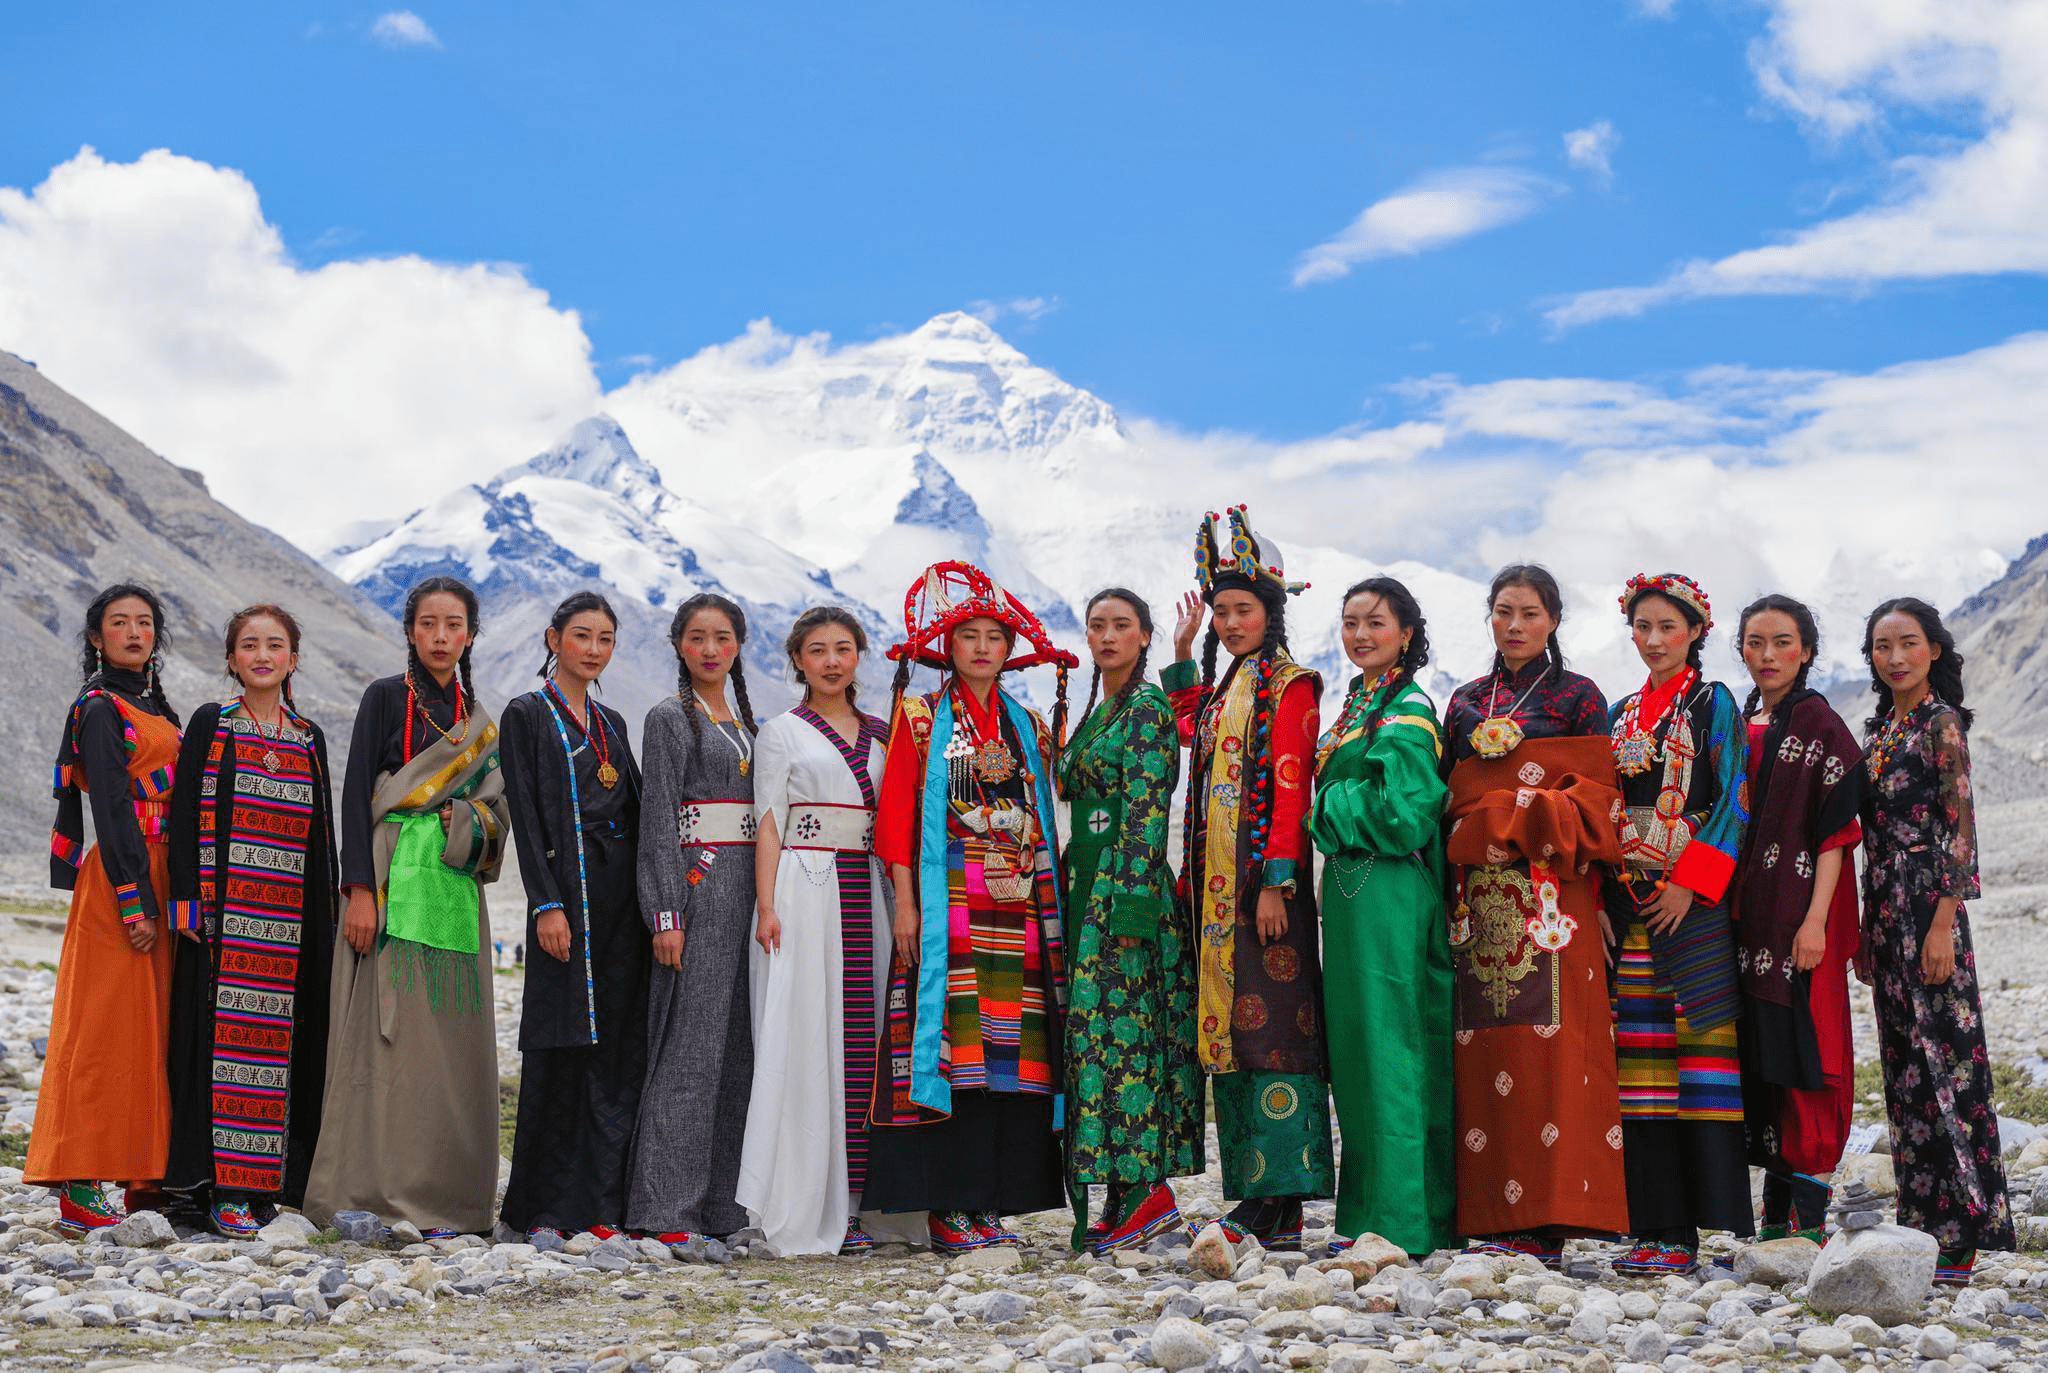 藏族美女-中关村在线摄影论坛